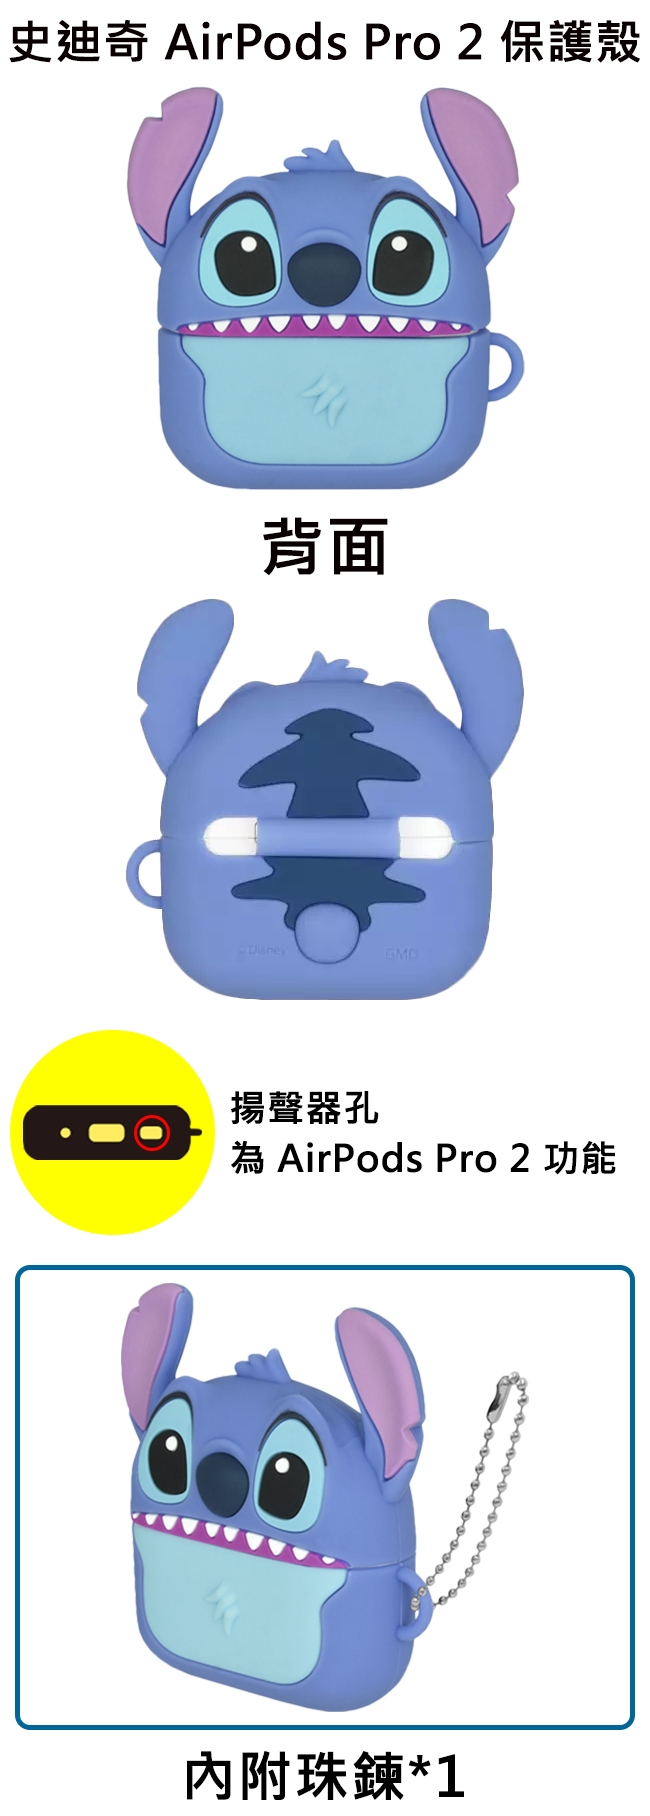 史迪奇 AirPods Pro 2保護殼背面揚聲器孔為 AirPods Pro 2 功能內附珠鍊*1